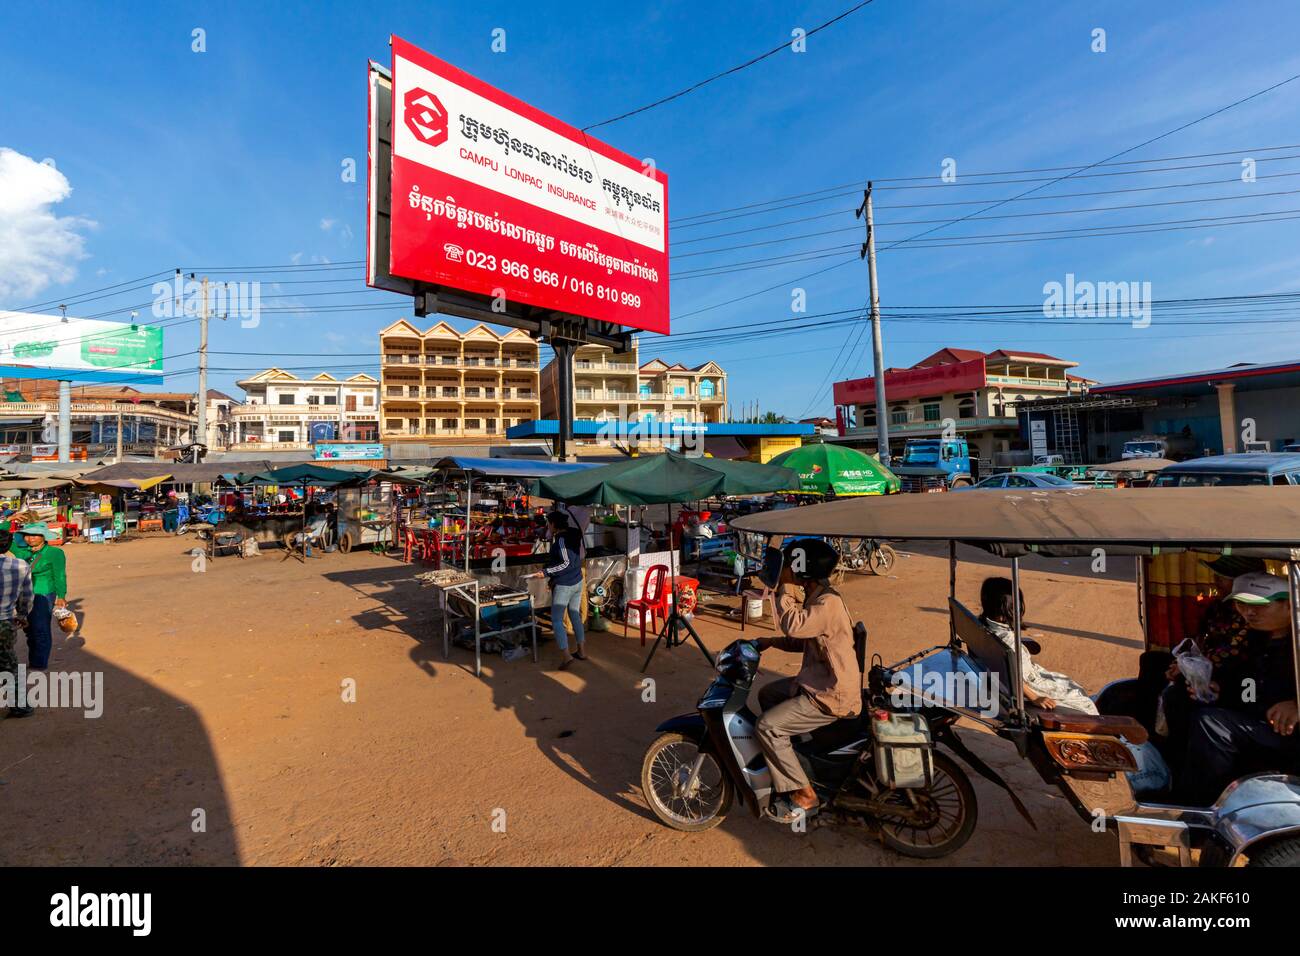 Ein tuk tuk Passagiere, die durch ein Verkehrsknotenpunkt mit Street Food gefüllt Stände Antriebe unter einer großen plakatwand in Skun, Kambodscha. Stockfoto